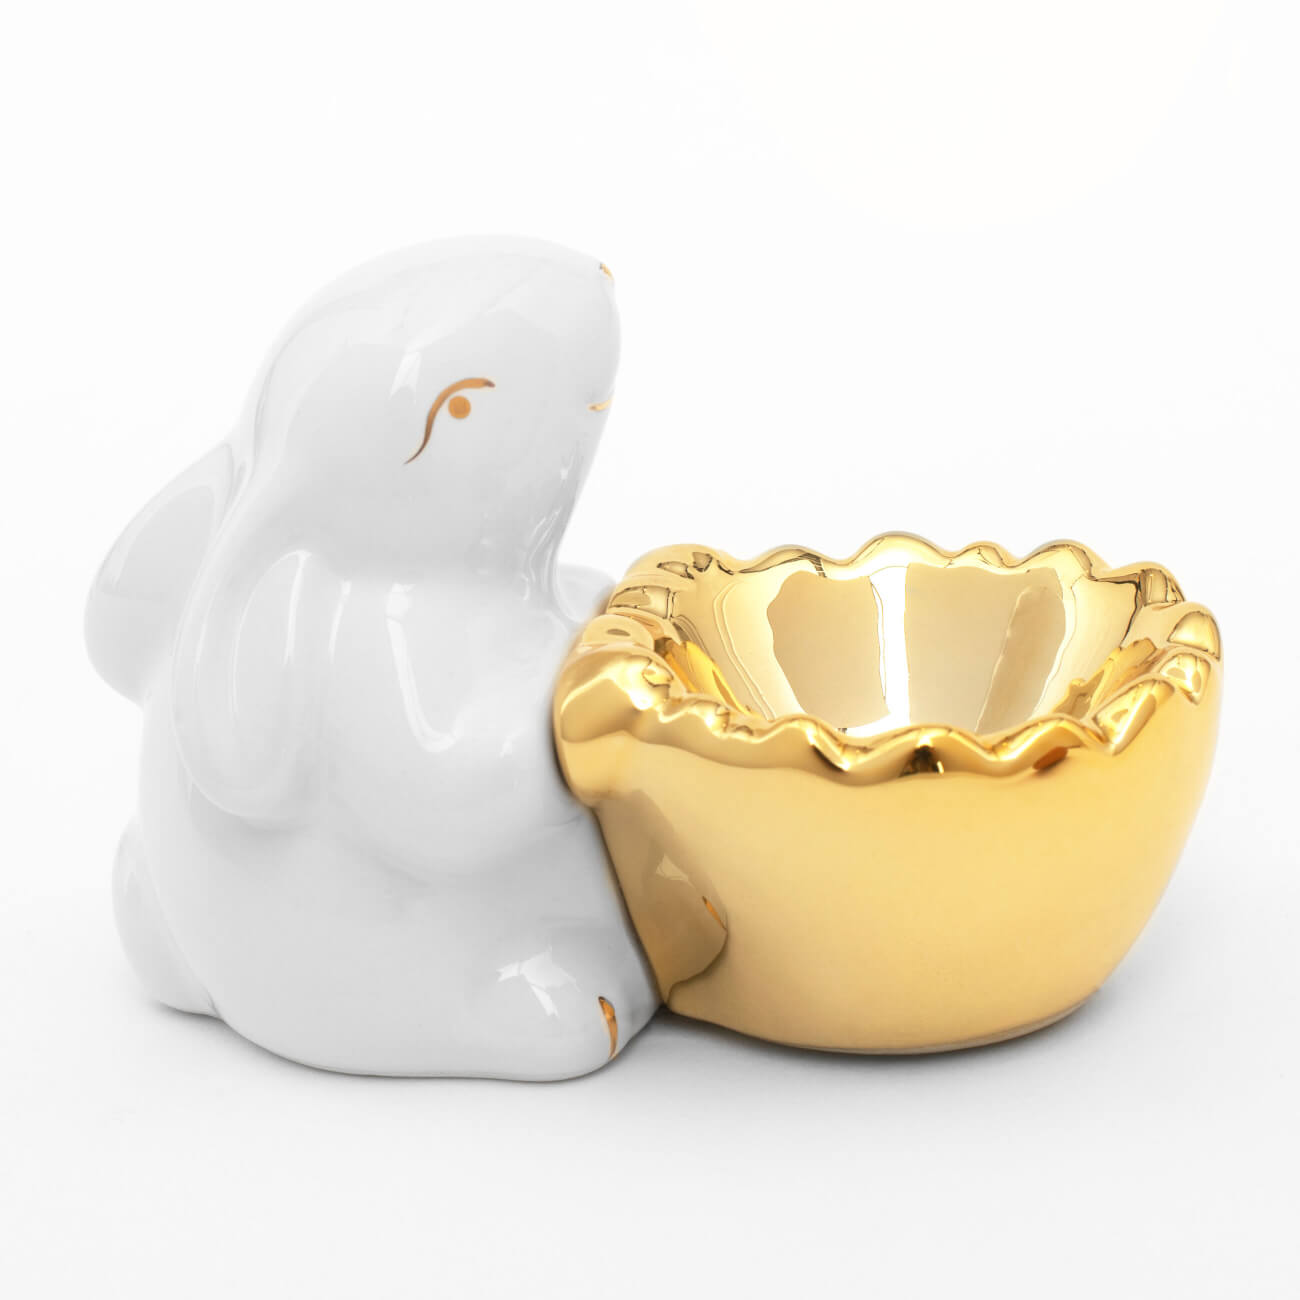 Подставка для яйца, 11 см, керамика, бело-золотистая, Кролик со скорлупой, Easter gold подставка под губки мультидом